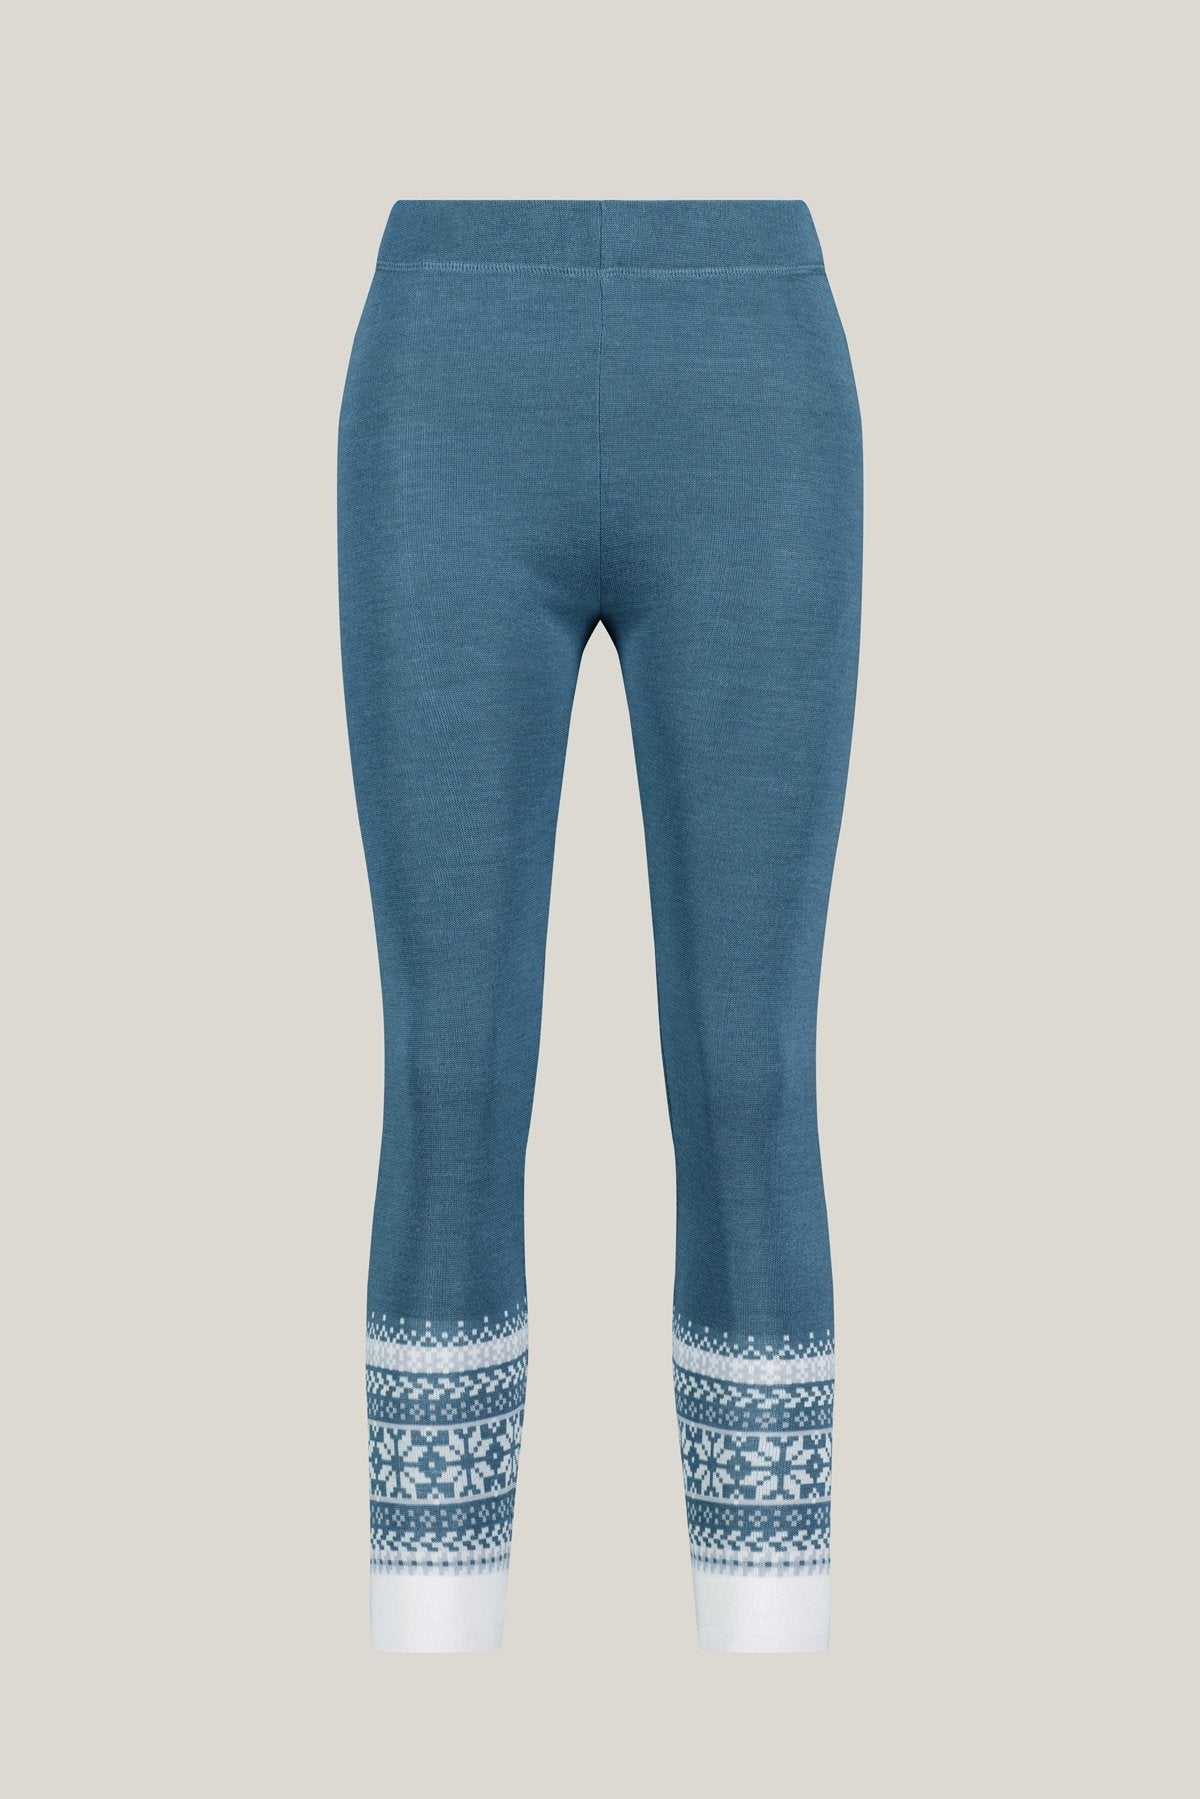 Gray-blue Astrid leggings made of Merino &amp; Tencel from Tidløs